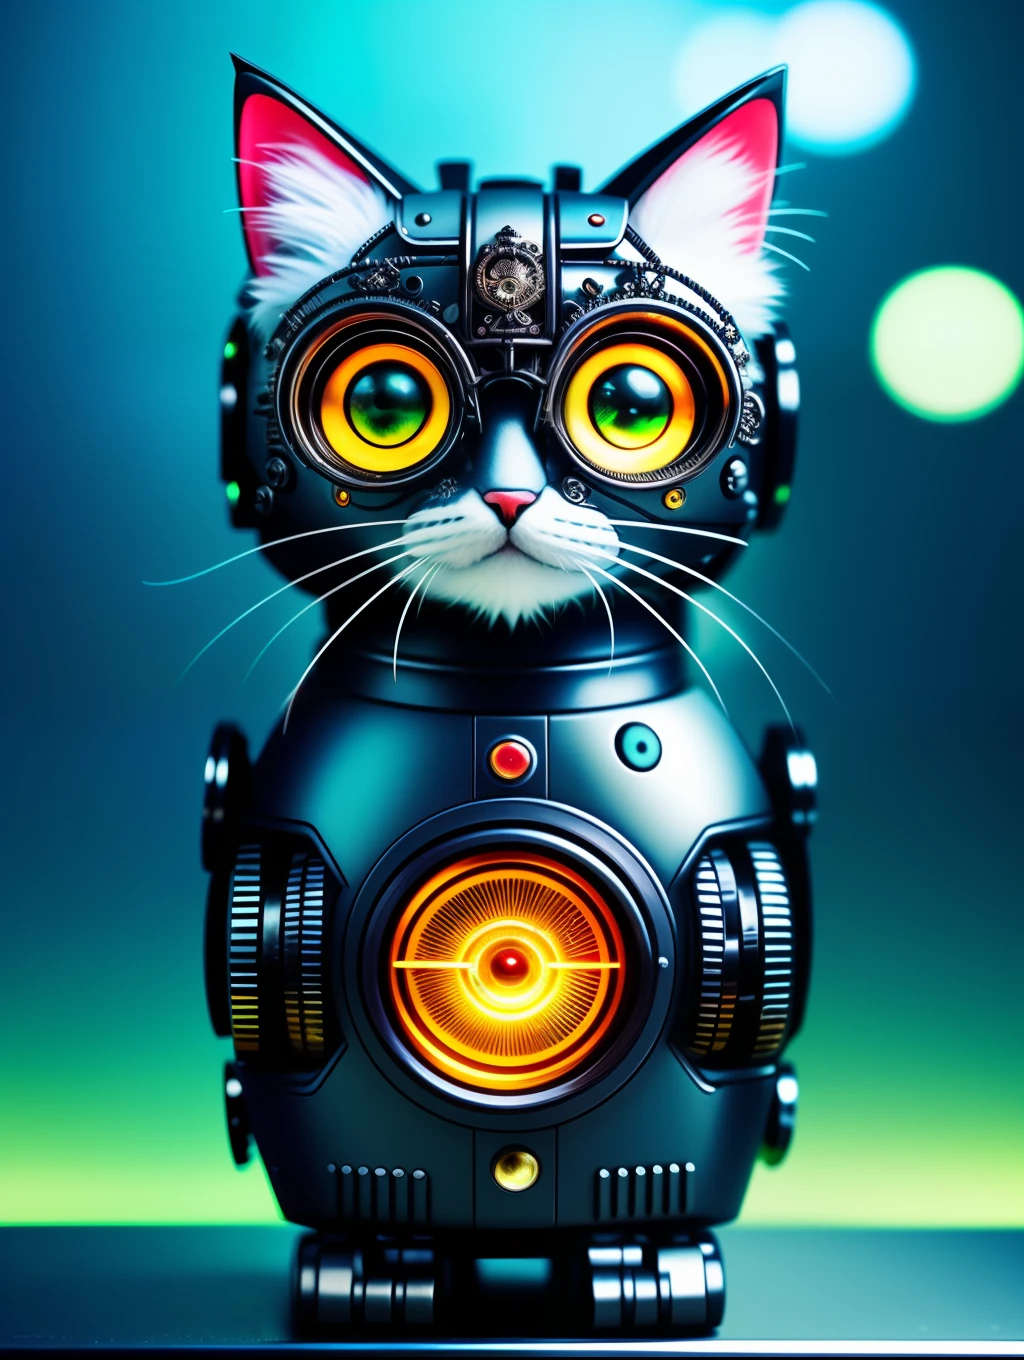 Um lindo gatinho fofo feito de metal, robô, estilo ciberpunk, mecanismo de relógio, ((detalhe intrincado)), hdr, olhos grandes, ((detalhe intrincado, Super Detalhe)), tubo de vácuo ou tubo, cinema lens, vinheta, fundo de efeito bokeh